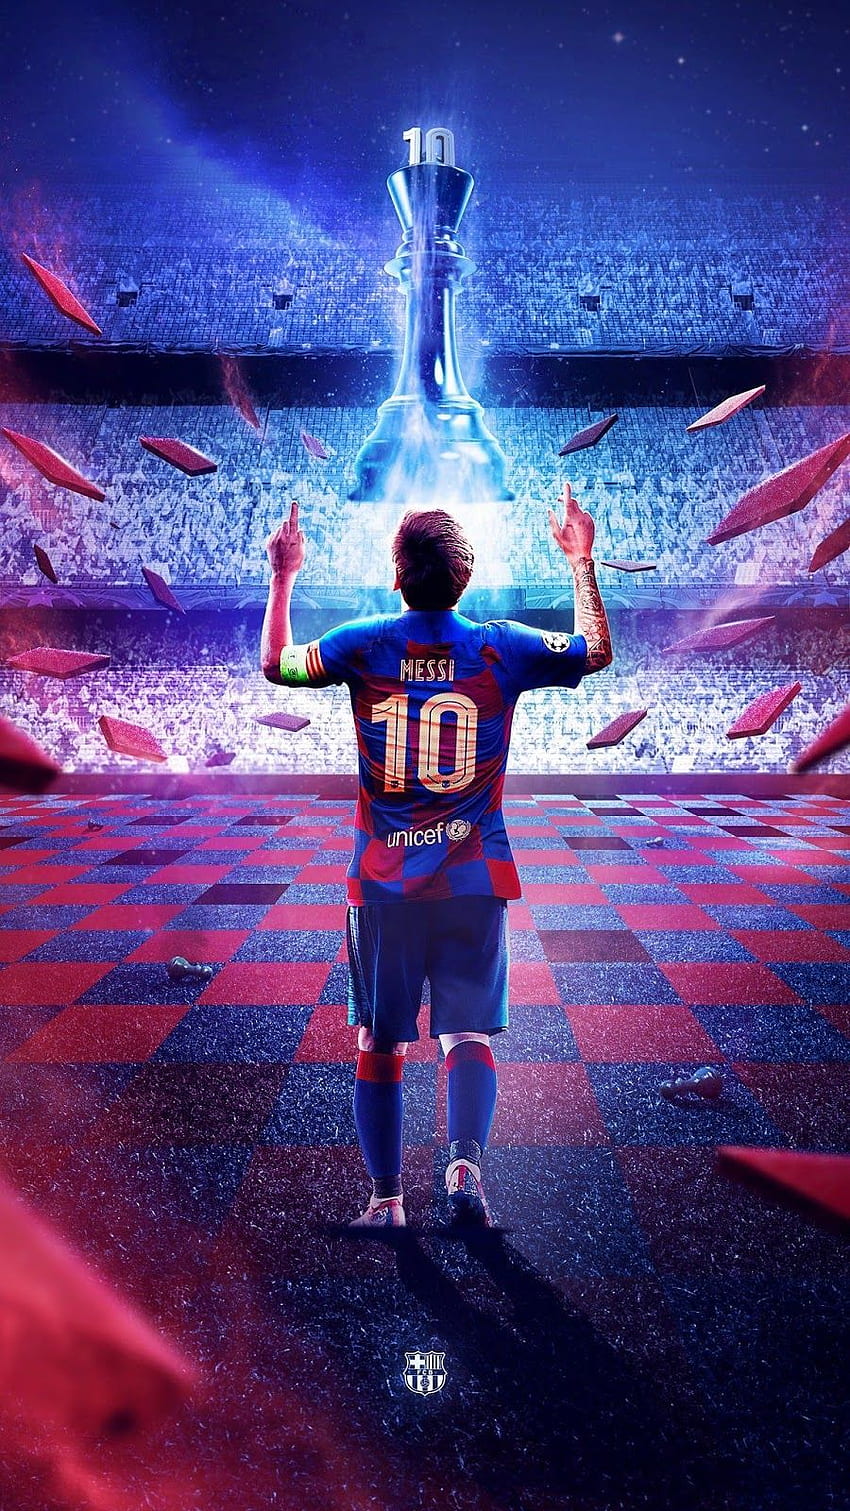 Hãy xem bức ảnh nền Messi đẹp nhất với độ phân giải 4K để thấy sự hoàn hảo về mặt hình ảnh và độ tương phản. Không chỉ đơn giản là một hình nền, mà đây chính là một tác phẩm nghệ thuật đẹp mắt được thiết kế để tôn vinh ngôi sao bóng đá thế giới này.